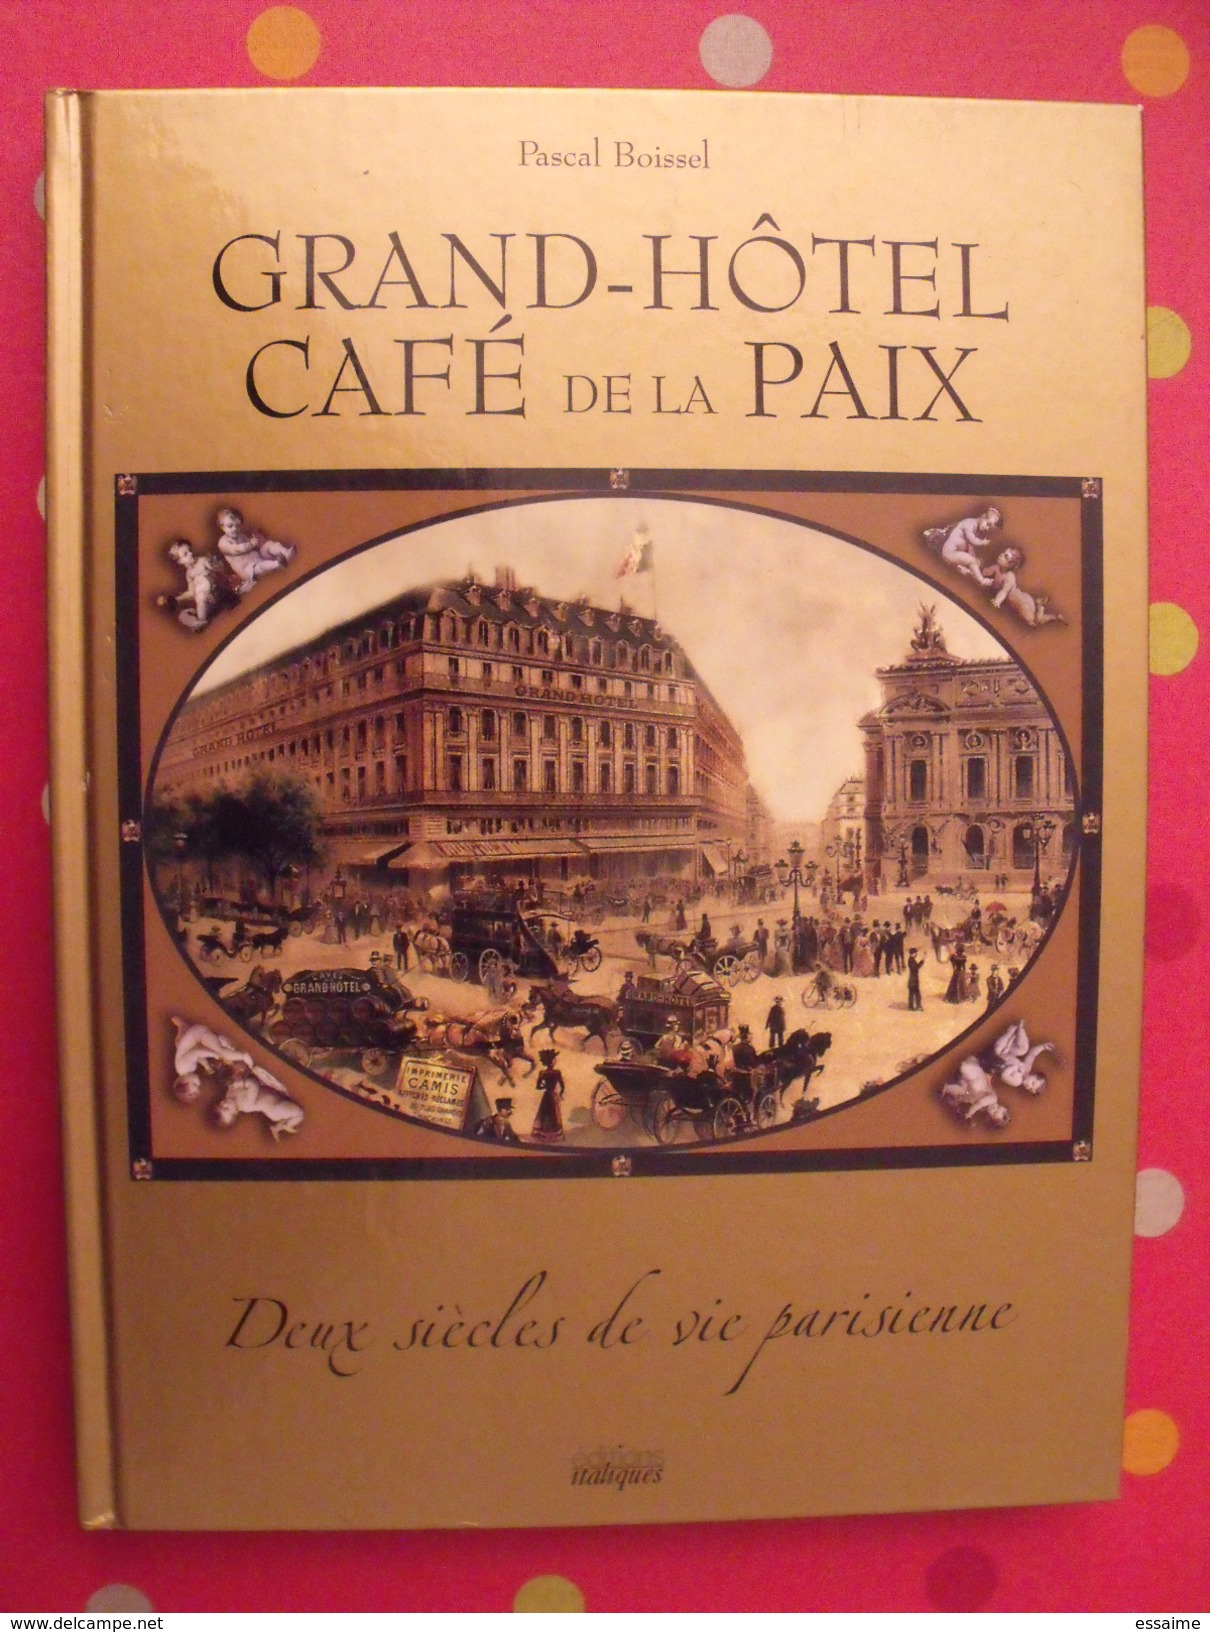 Grand Hotel Cafe De La Paix Pascal Boissel 2004 Paris Italiques - Paris